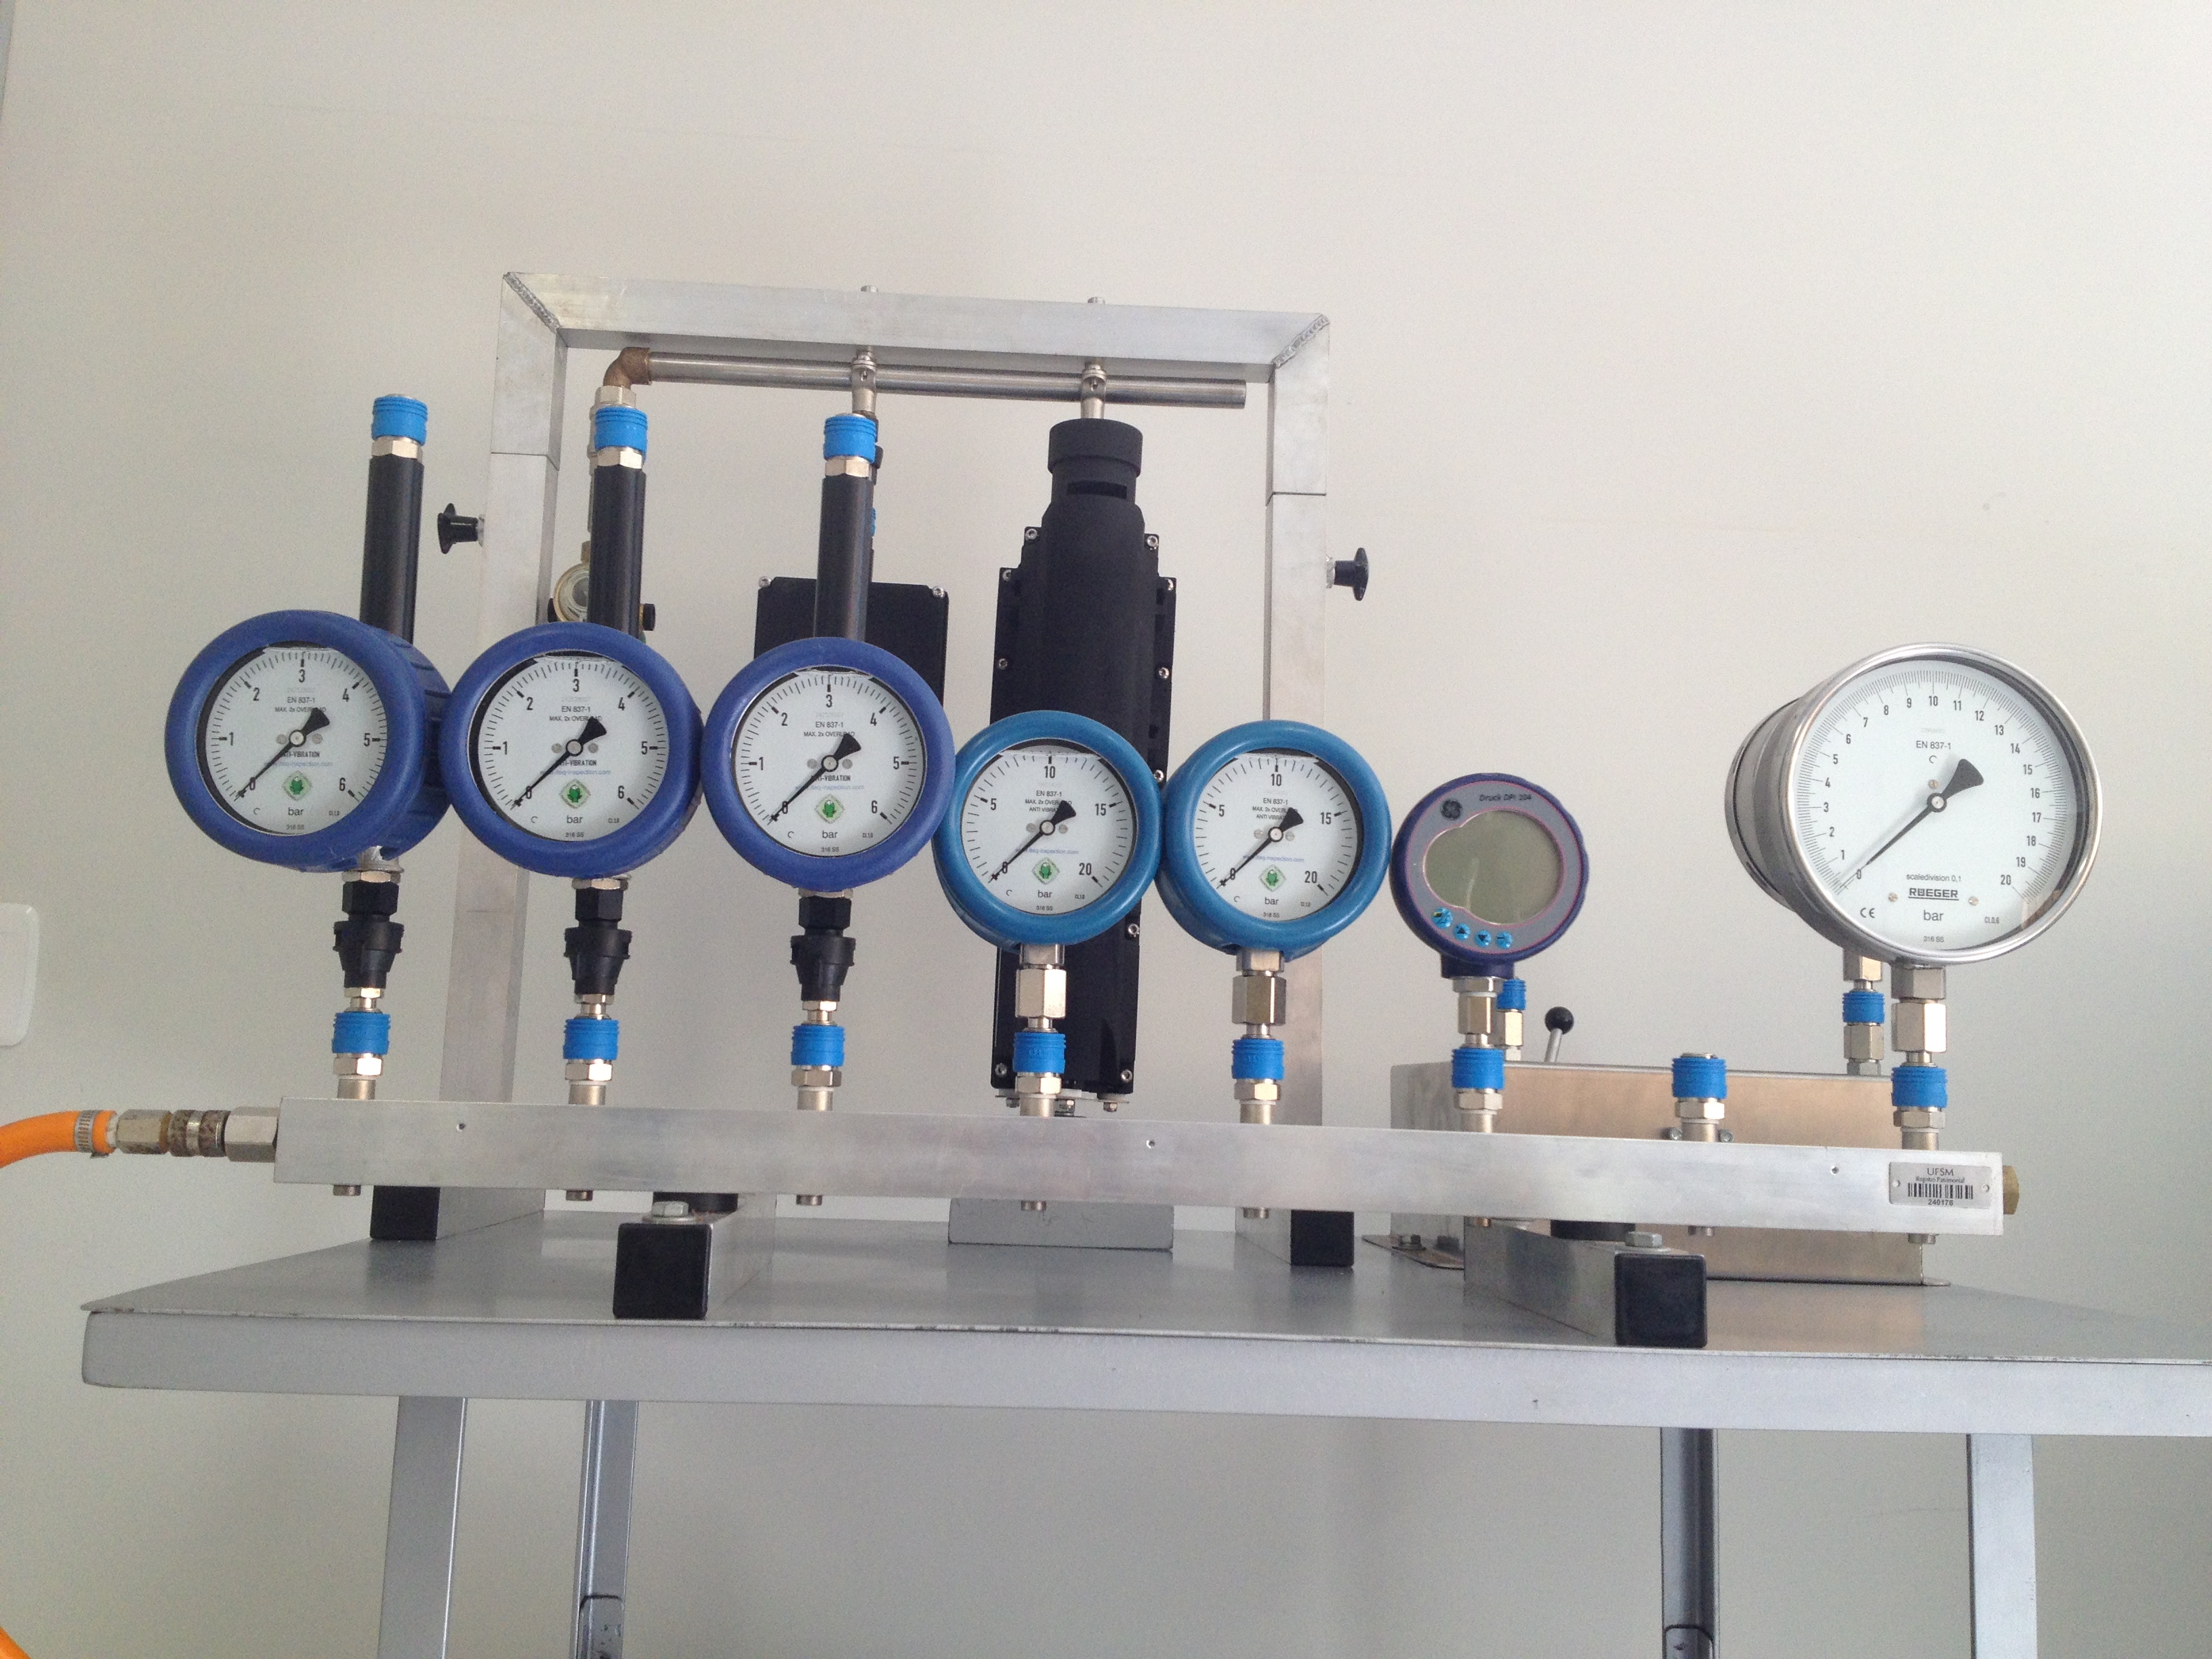 Manômetros para determinação da pressão do sistema de pulverização.